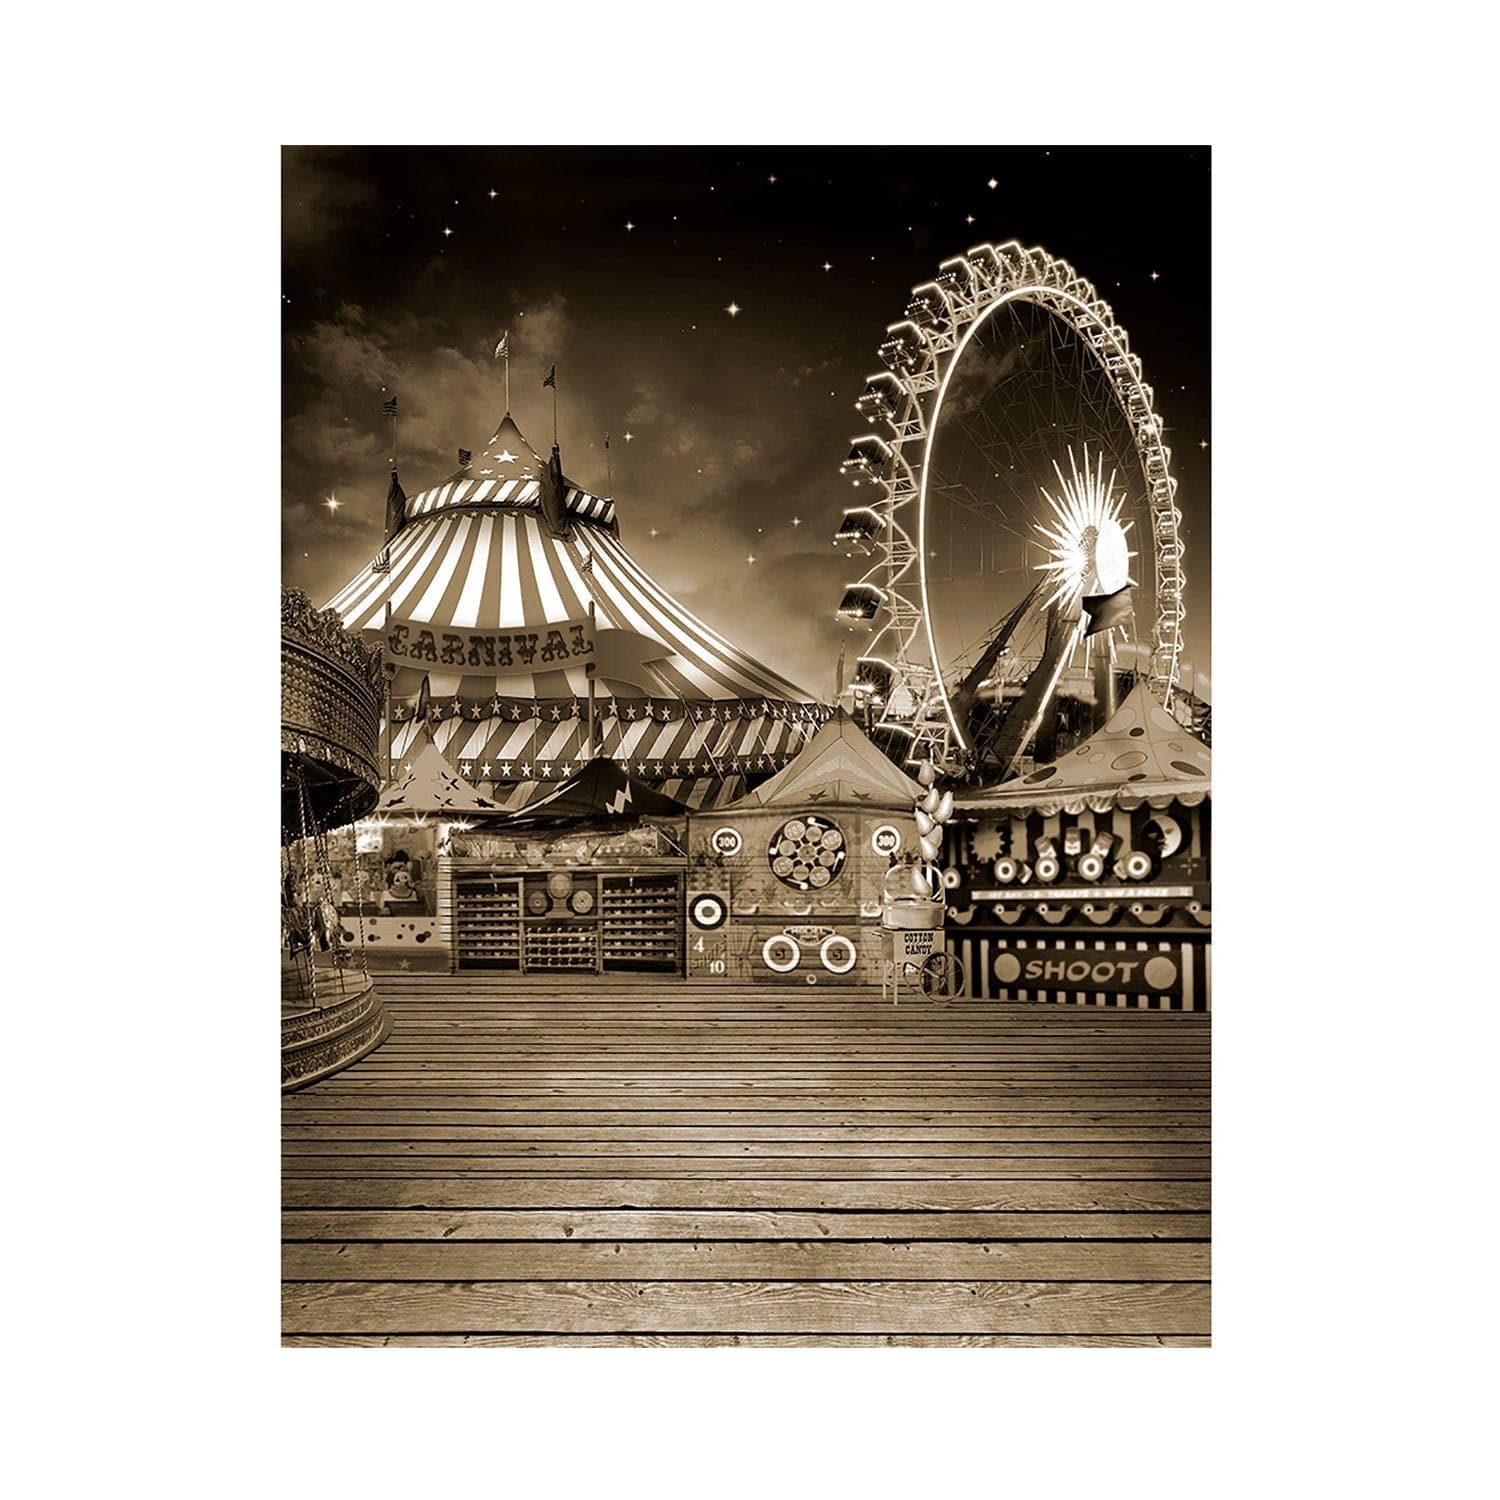 Grayscale Vintage Amusement Park Photo Backdrop - Basic 5.5  x 6.5  